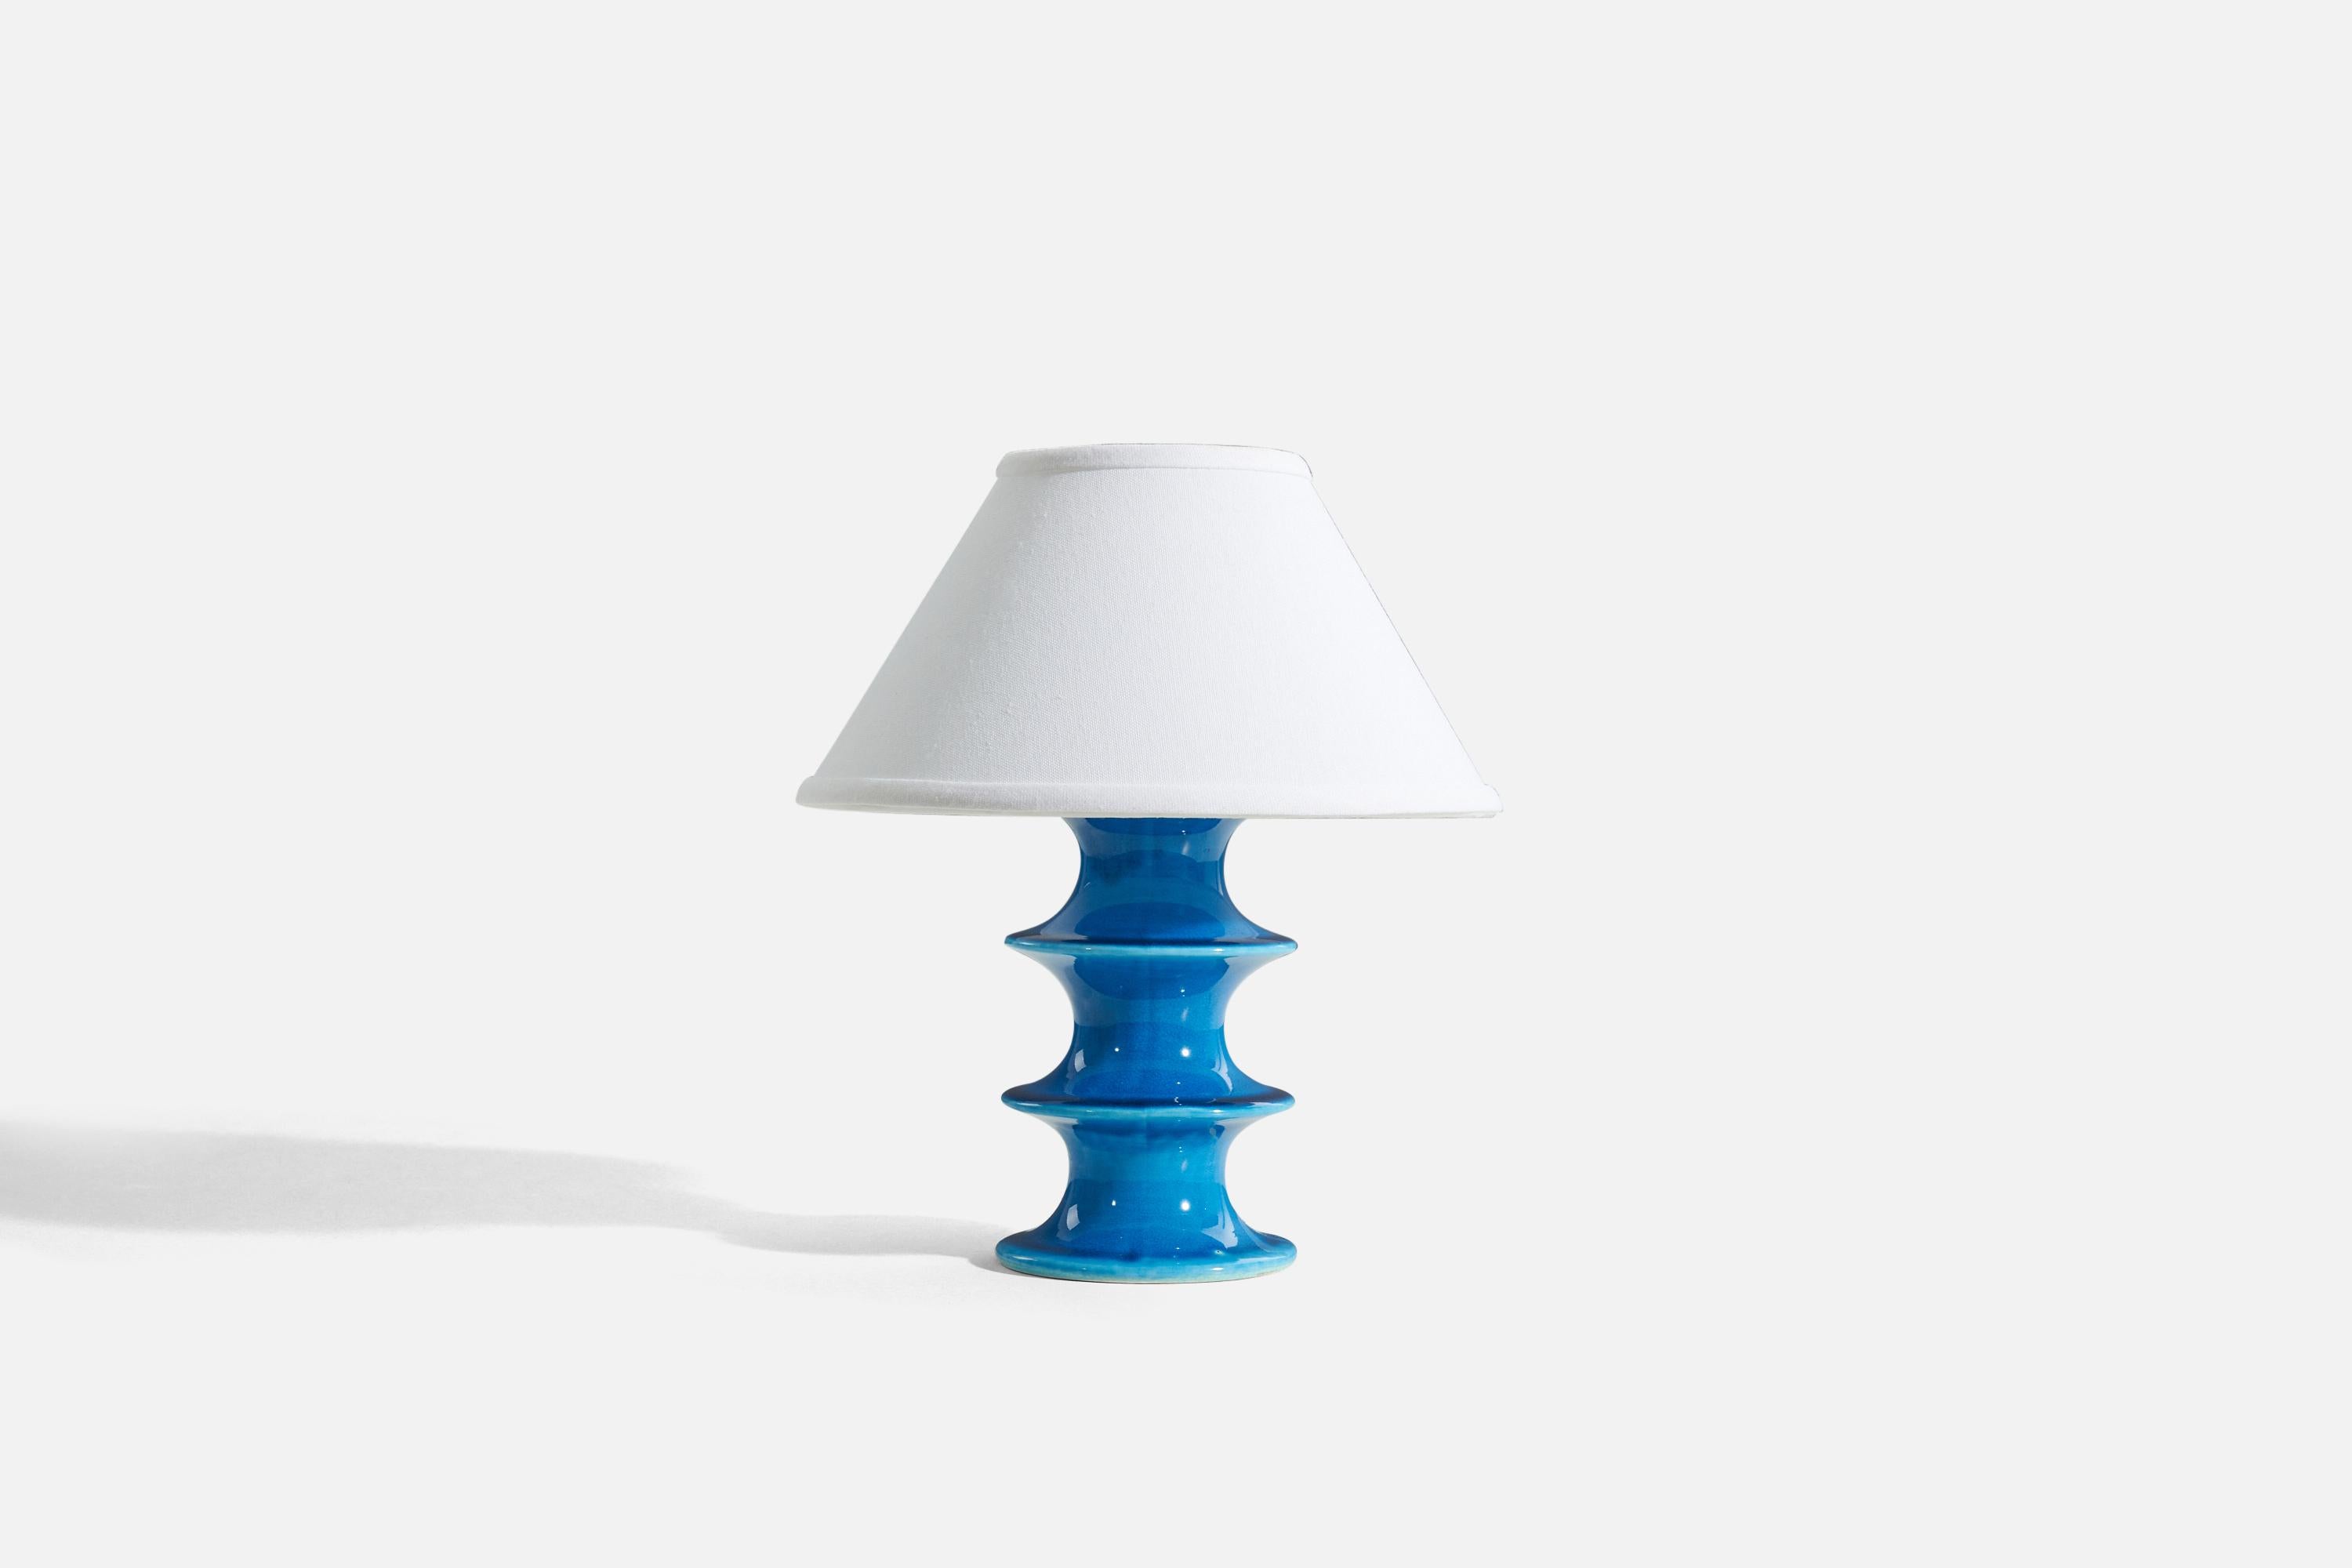 Une lampe de table en grès émaillé bleu conçue par Inger Persson, produite par Rörstrand, Suède, années 1960. Marqué.

Vendu sans abat-jour.
Dimensions de la lampe (pouces) : 8.4375 x 4,375 x 4,375 (H x L x P)
Dimensions ombre (pouces) : 4.5 x